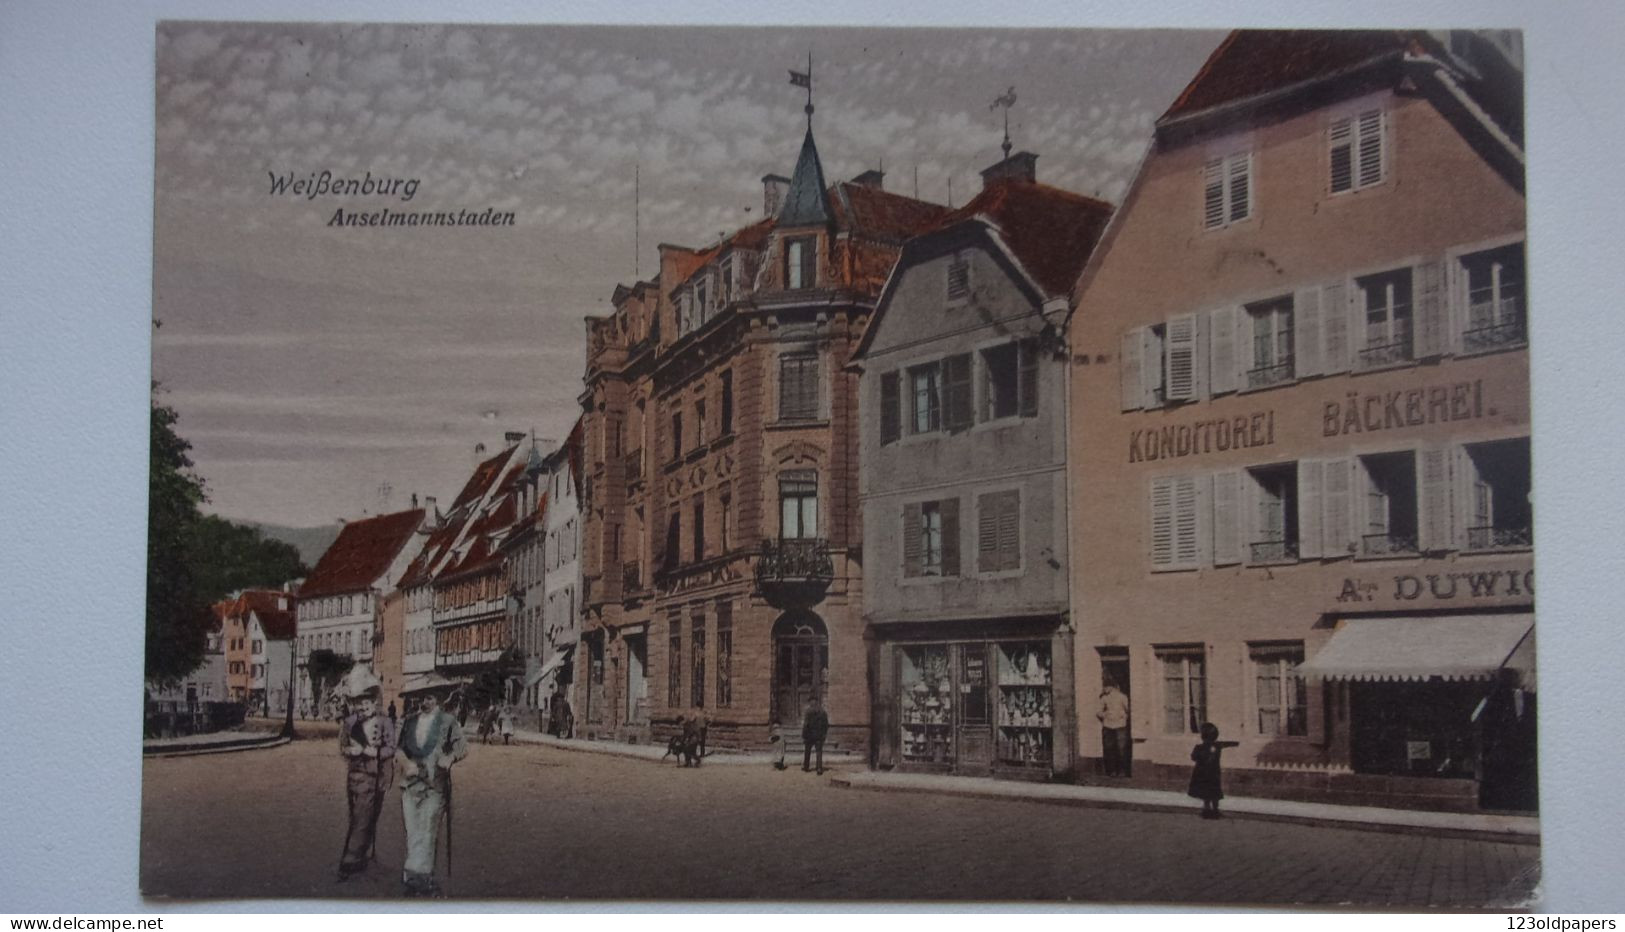 67 WISSEMBOURG  Weißenburg ANSELMANNSTADEN BACKEREI 1919 - Wissembourg